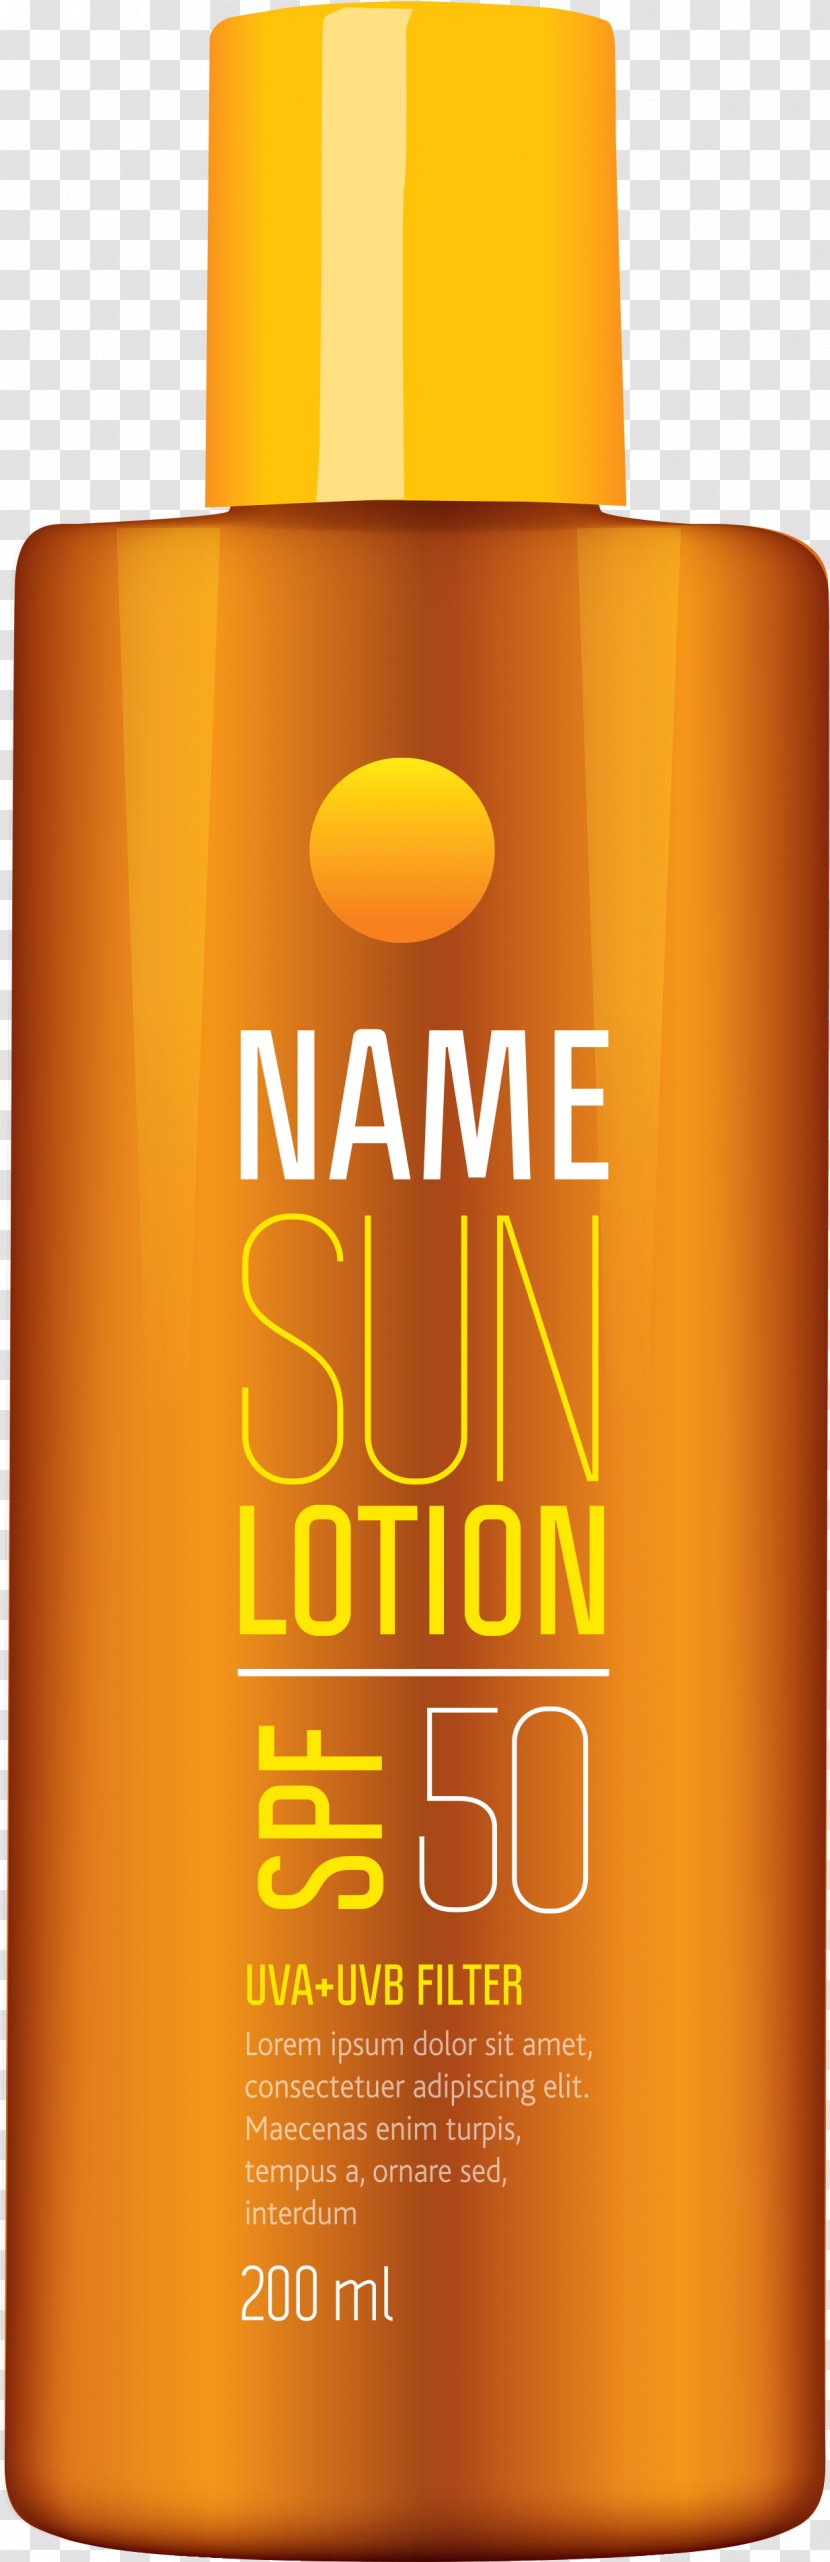 Juice Background - Liqueur - Orange Transparent PNG